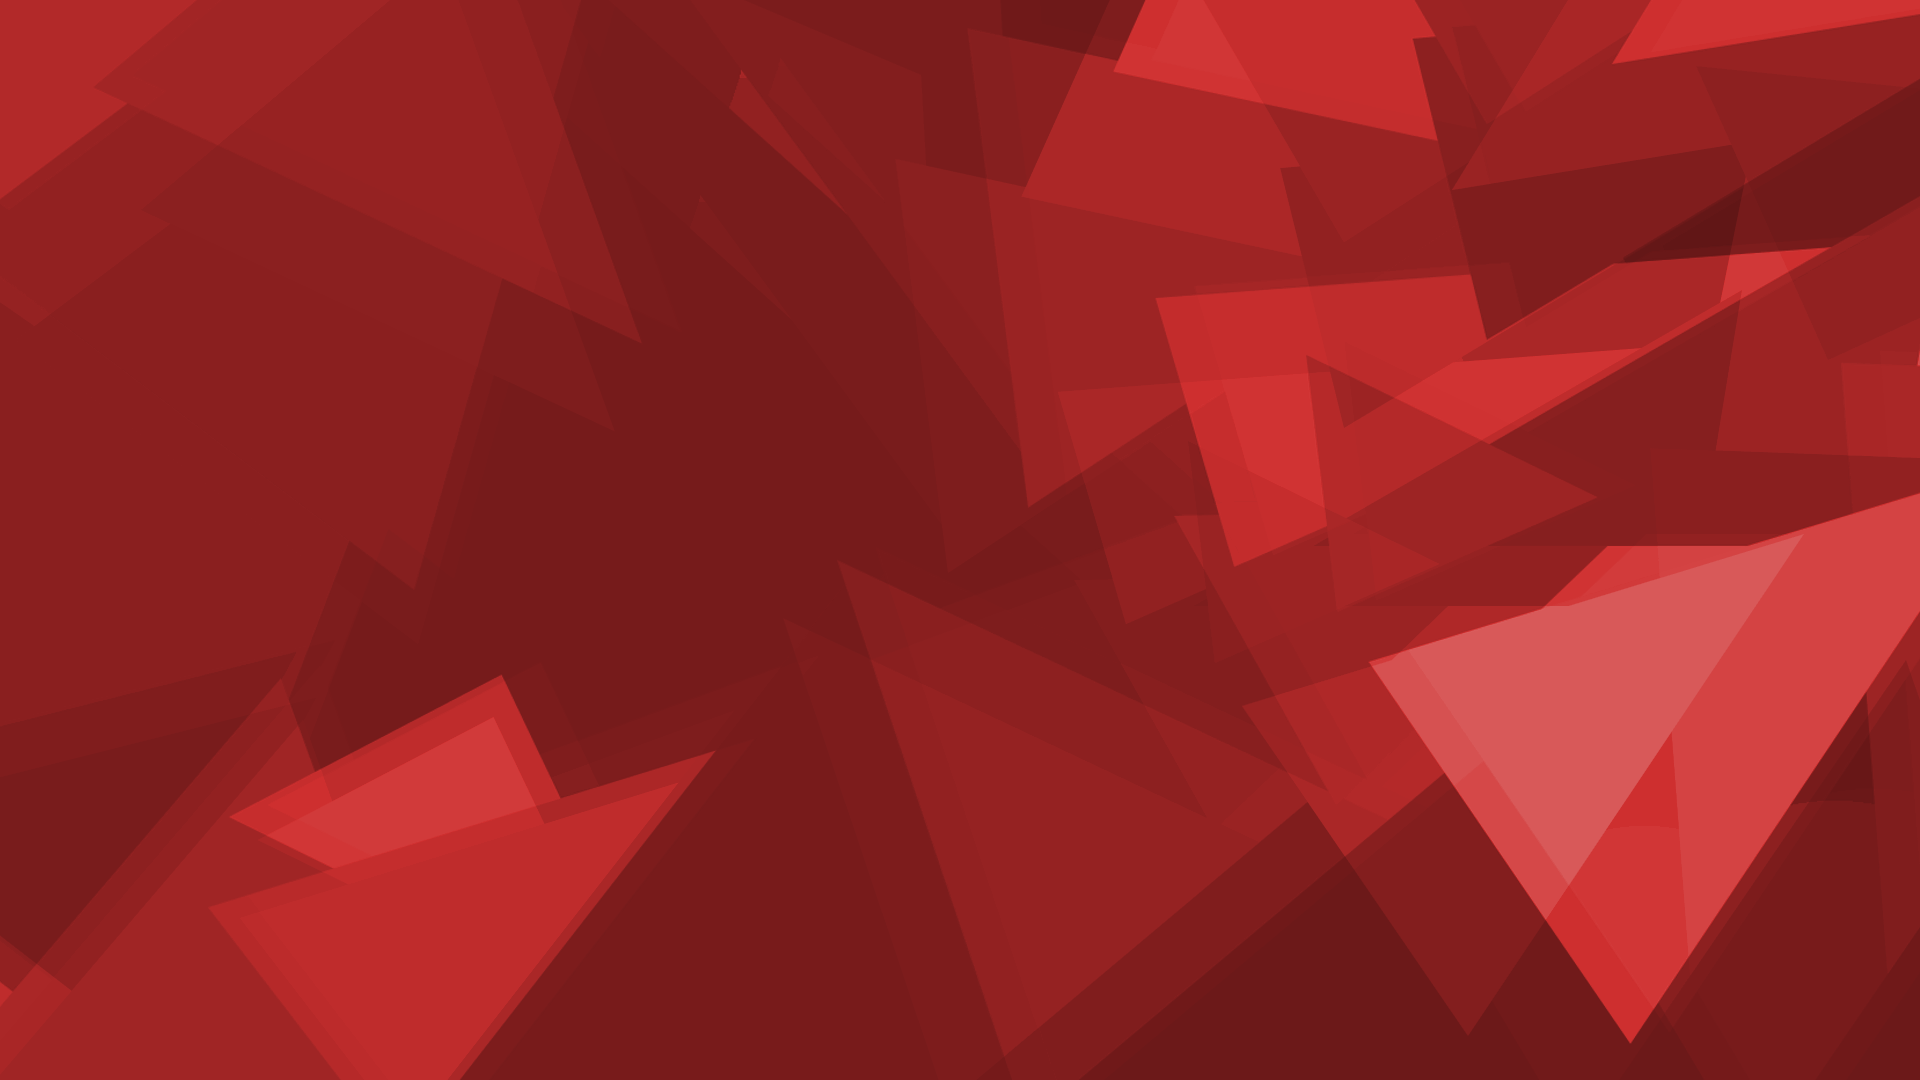 Bạn đang tìm kiếm một hình nền đa giác kênh không có logo màu đỏ độc đáo? TheMageOfClockwork sẽ mang đến cho bạn một lựa chọn tuyệt vời, phù hợp với bất kỳ tông màu nào của các thiết kế của bạn. Hãy cùng khám phá ngay thôi!